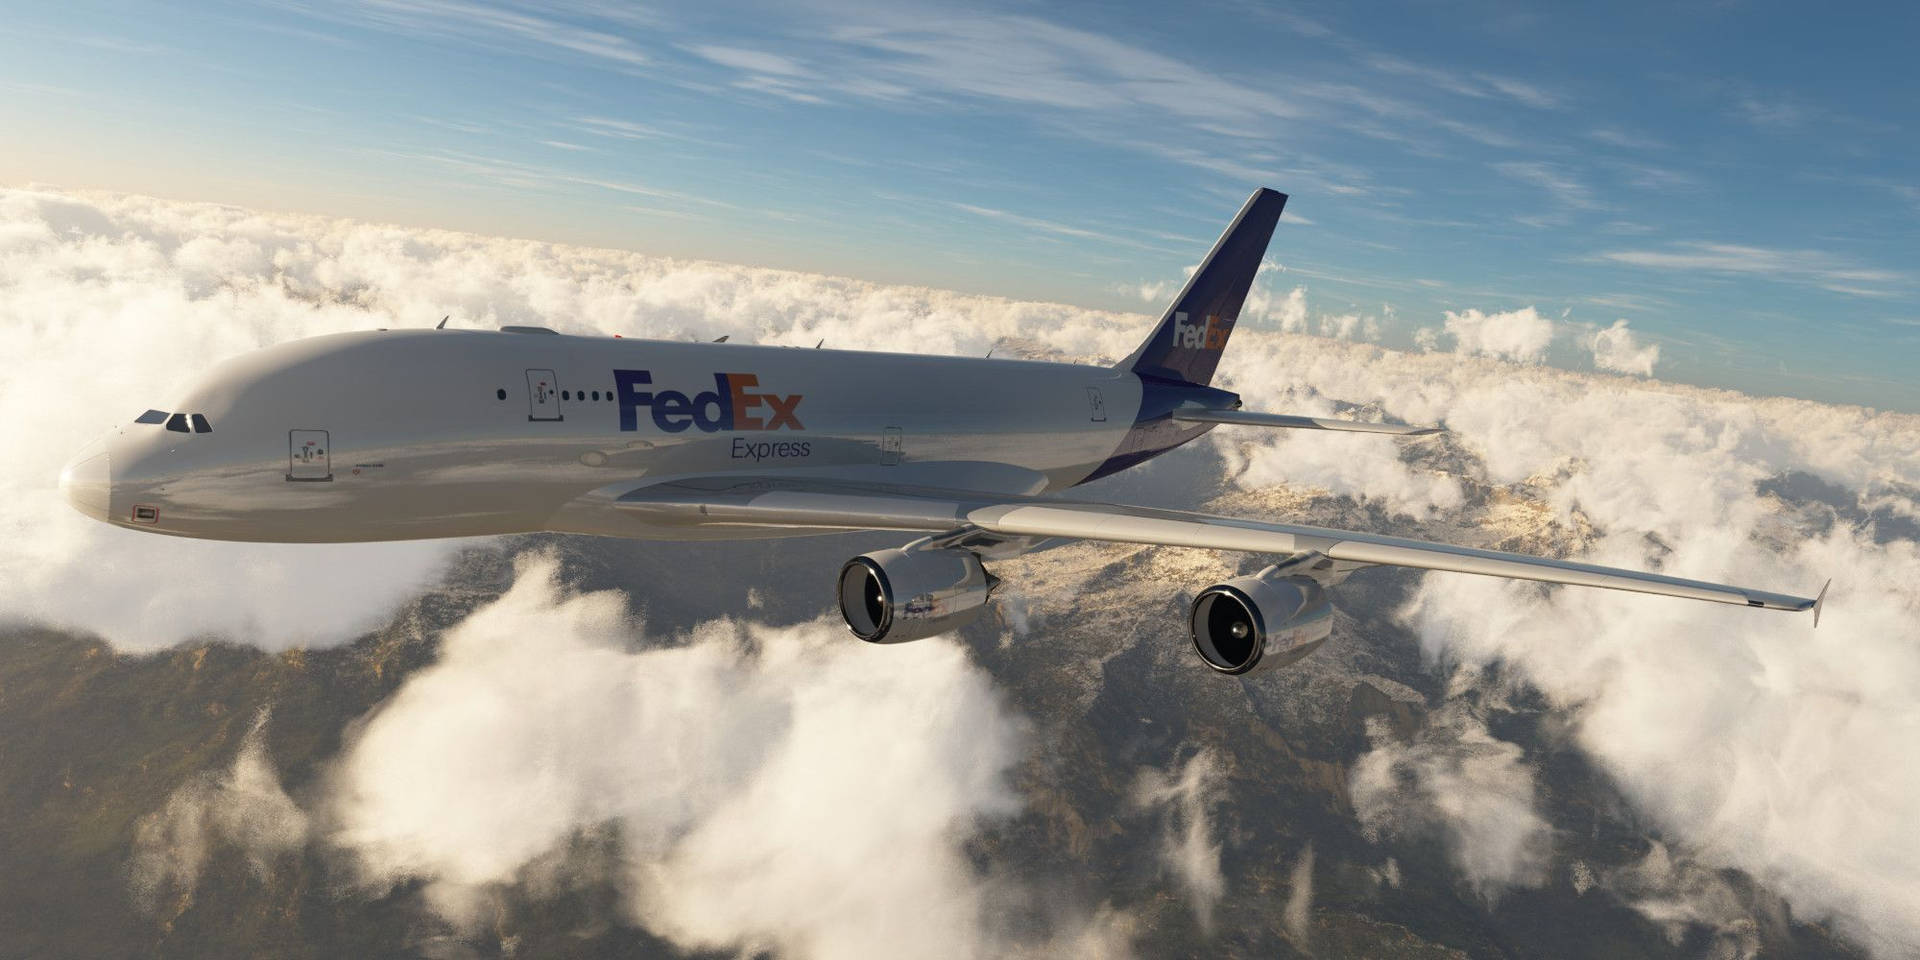 Aviãoda Fedex No Mar De Nuvens. Papel de Parede